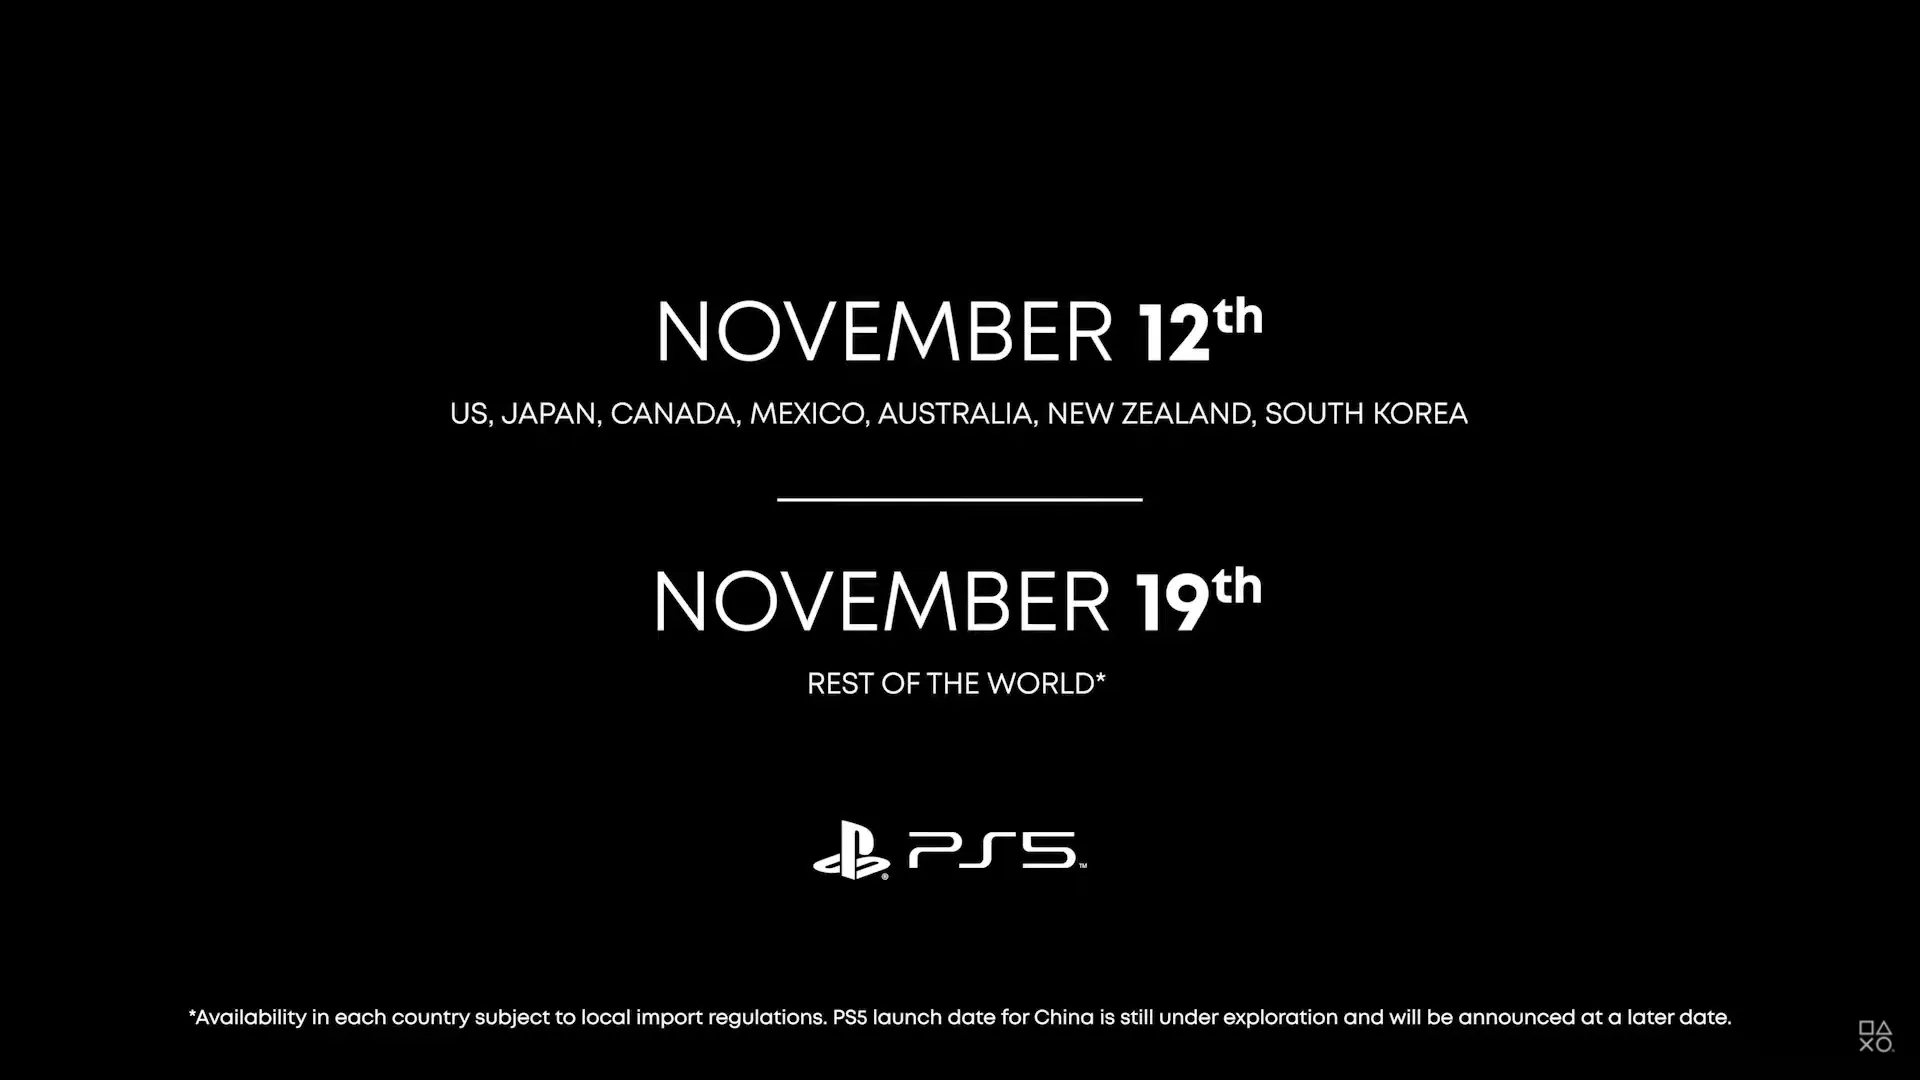 PS5 Showcase 16 Septiembre
PS5 fecha de lanzamiento